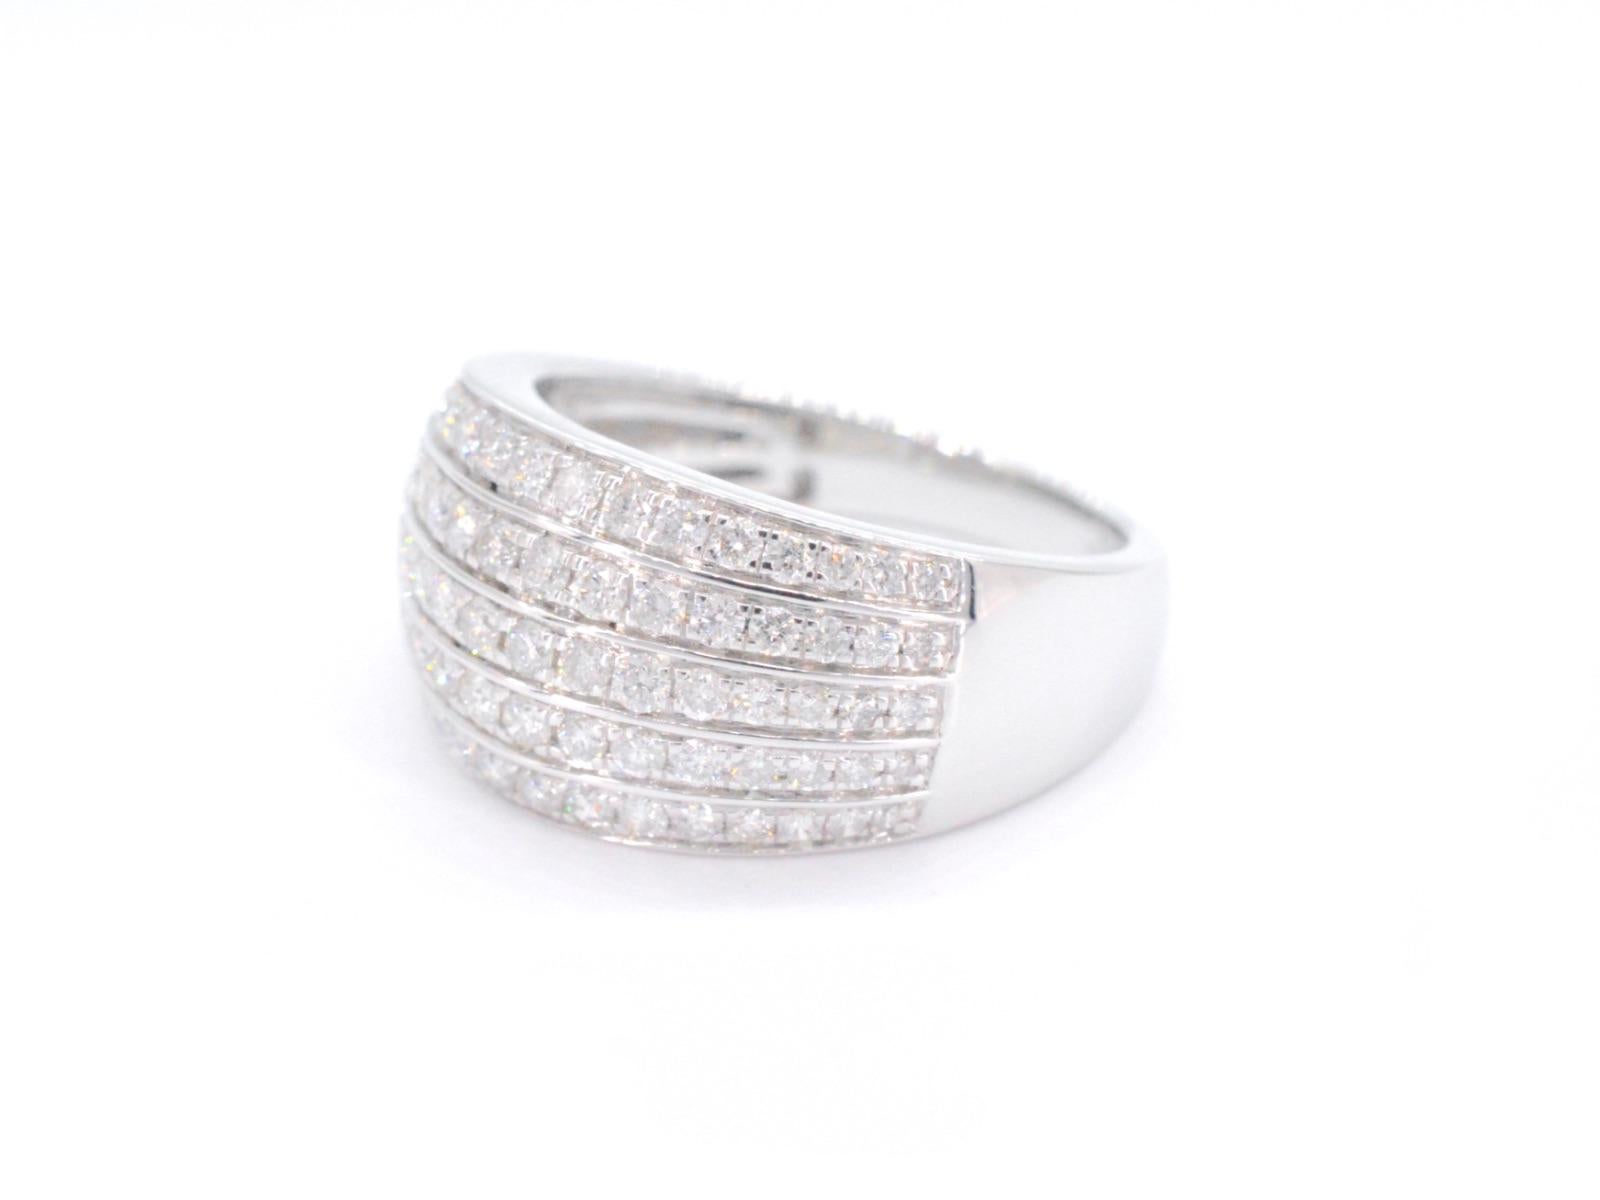 Une bague en or blanc avec des diamants pesant 1,00 carat est un bijou époustouflant qui présente une pièce centrale en diamant étincelante sertie dans une bande d'or blanc lustré. Le poids de 1,00 carat des diamants fait de cette bague une pièce